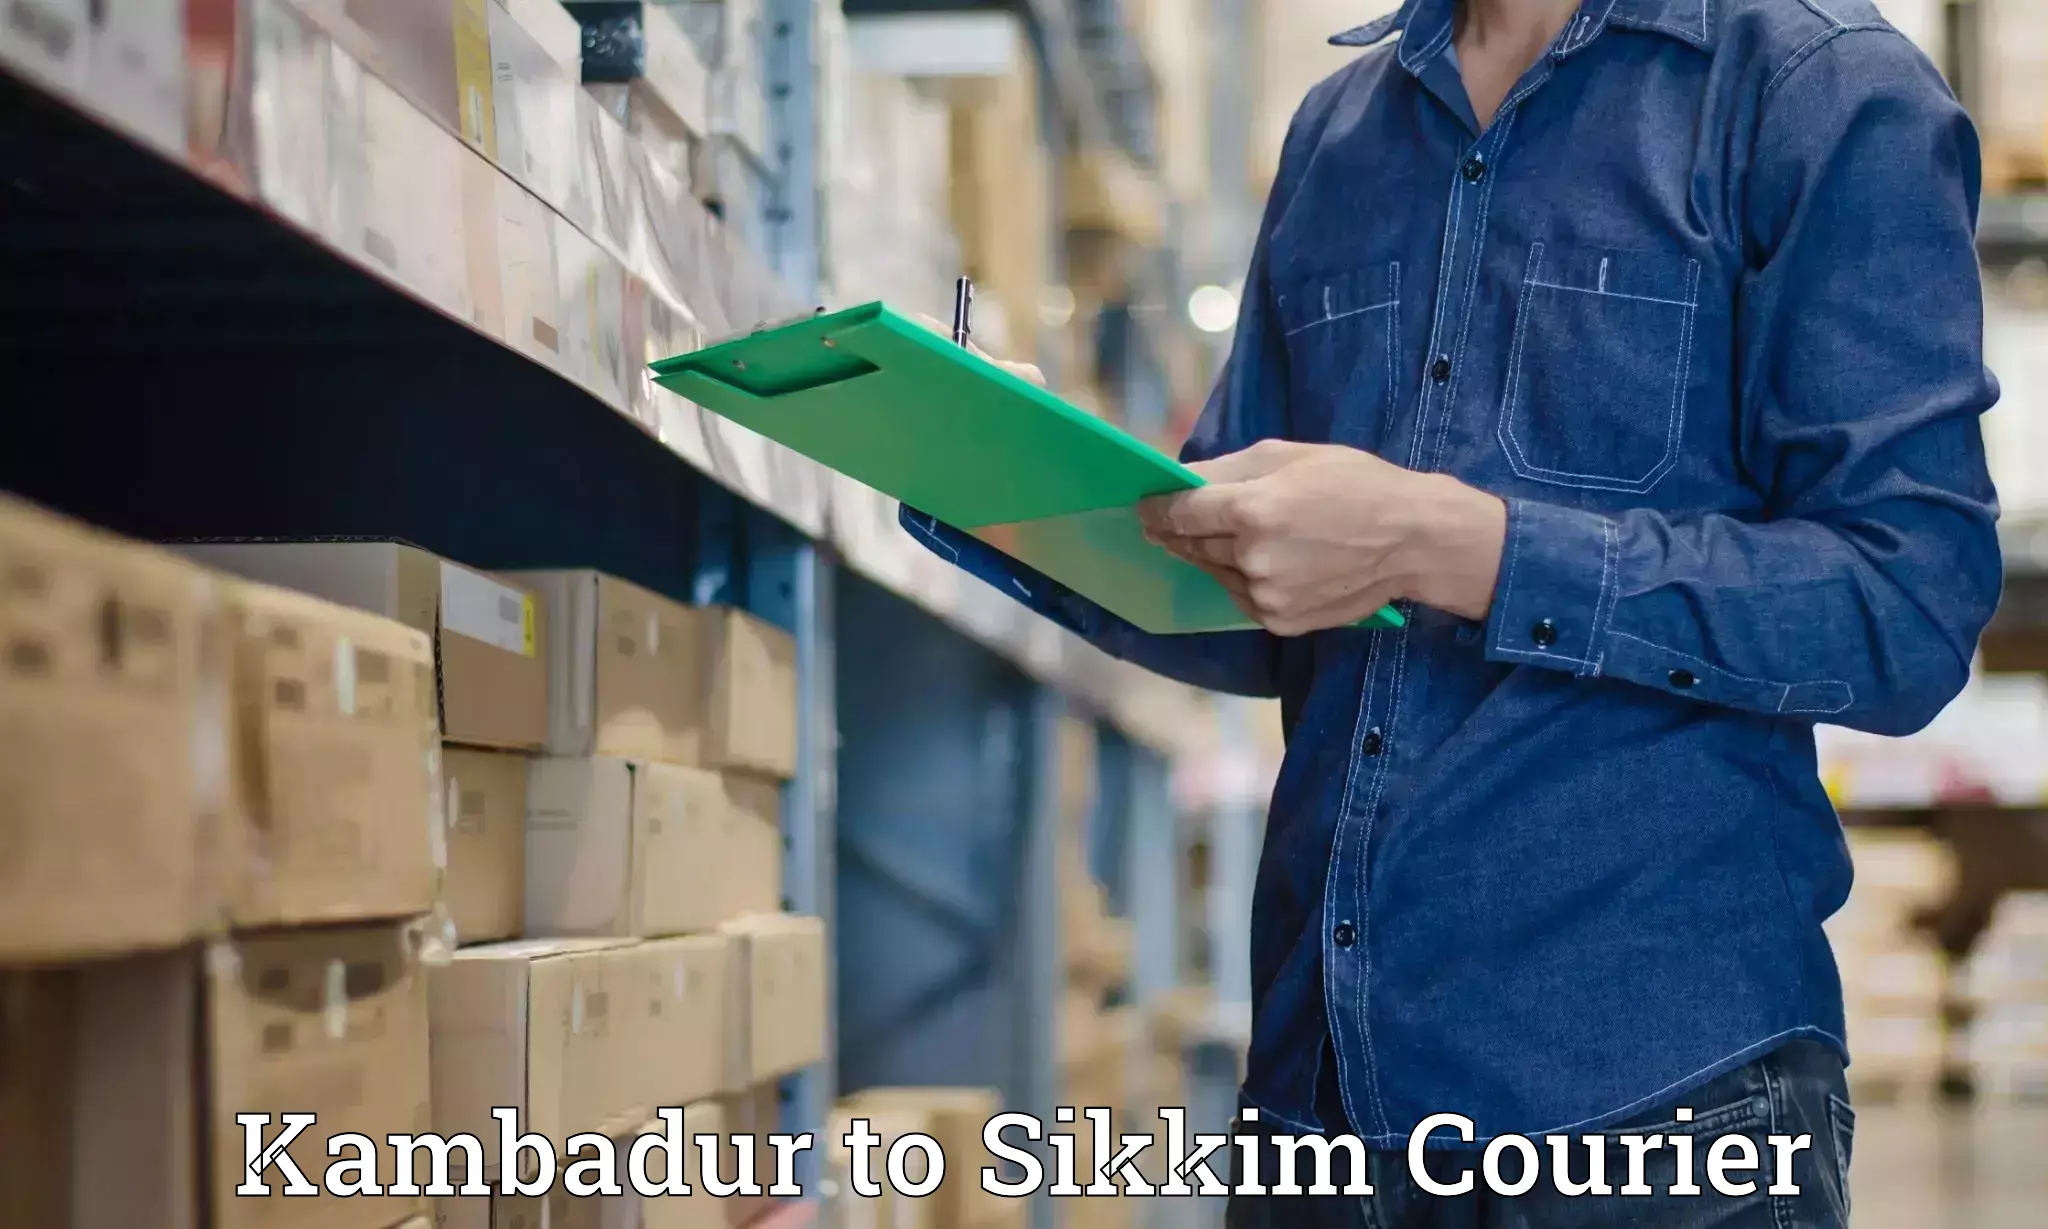 Efficient parcel service Kambadur to Singtam